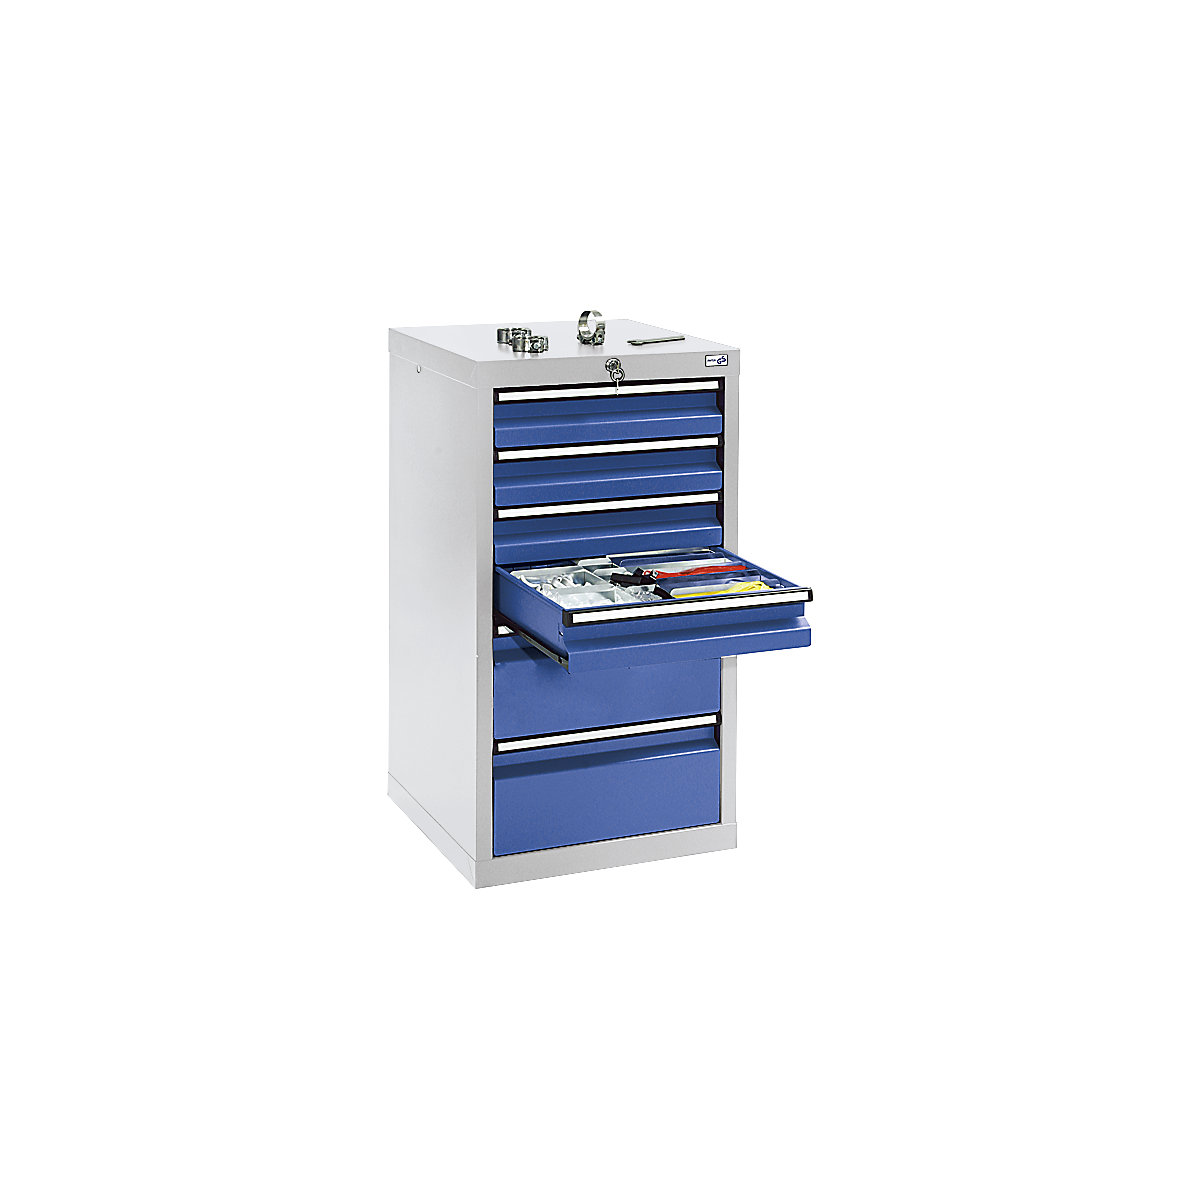 Zásuvková skříň, v x š x h 900 x 500 x 500 mm, 4 zásuvky 100 mm vysoké, 2 zásuvky 200 mm, korpus světle šedý, zásuvky hořcově modré-8